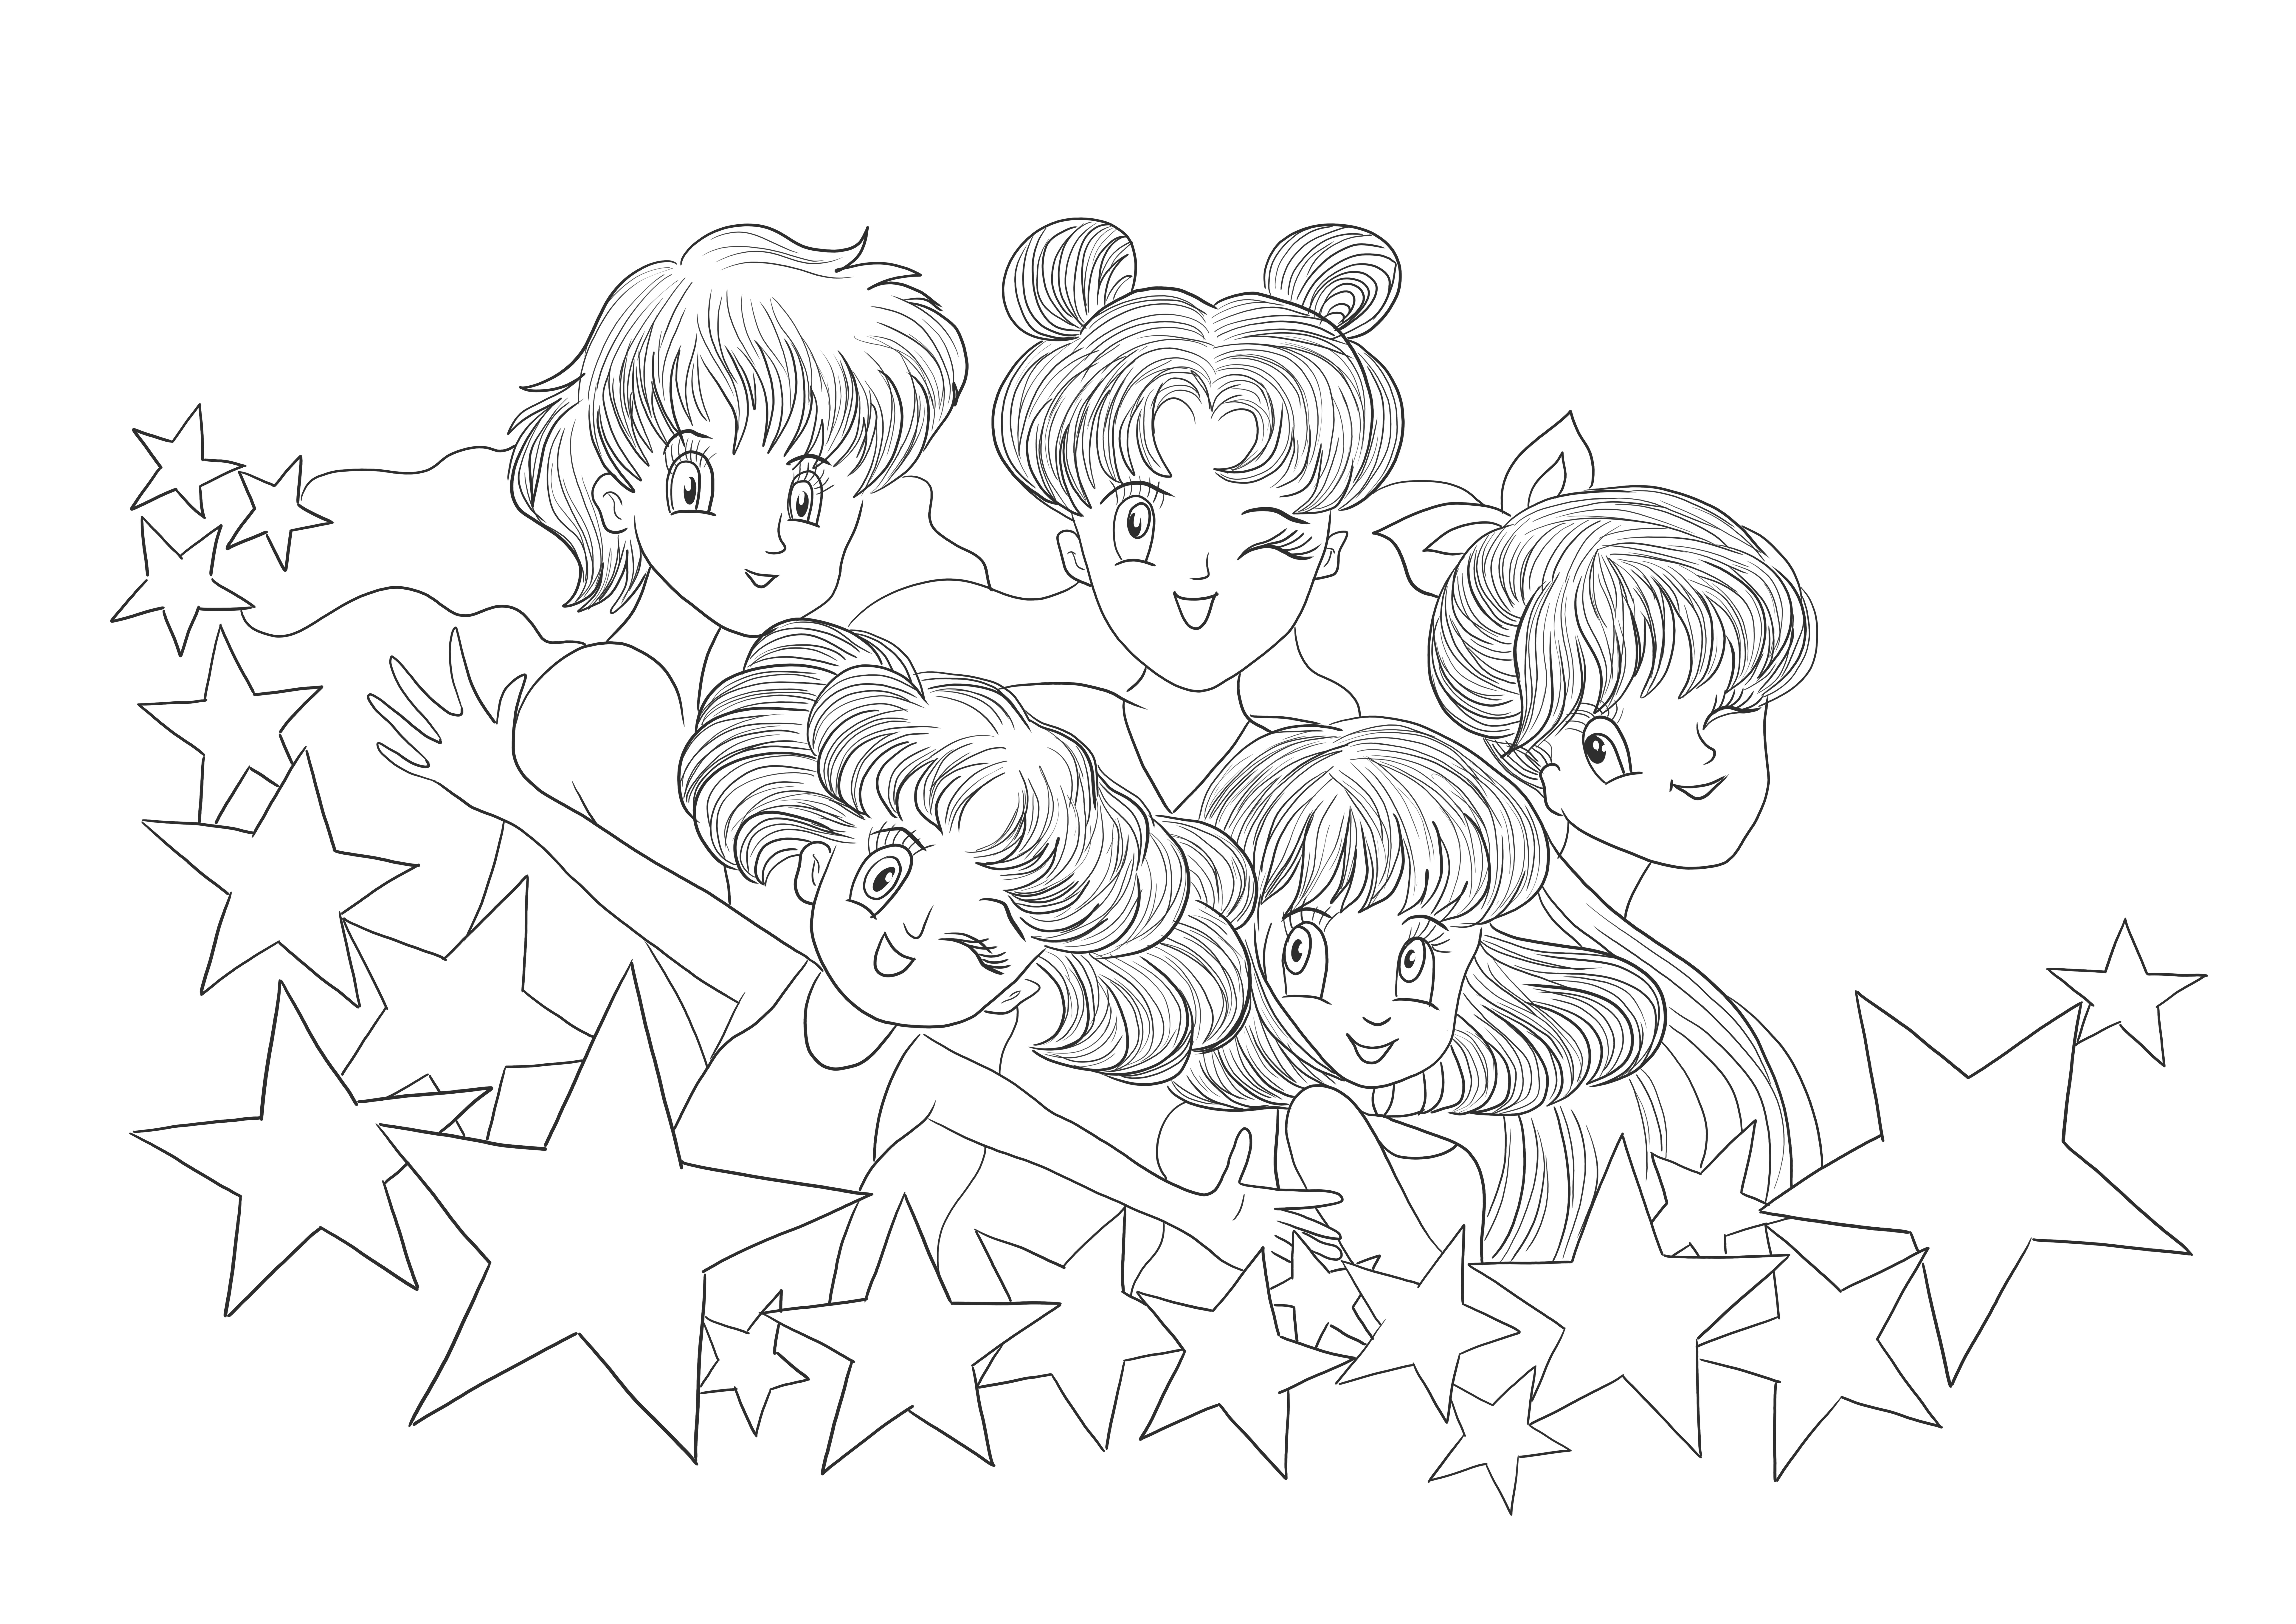 Imágenes imprimibles gratuitas de Sailor Moon para descargar e imprimir para que los niños las coloreen.